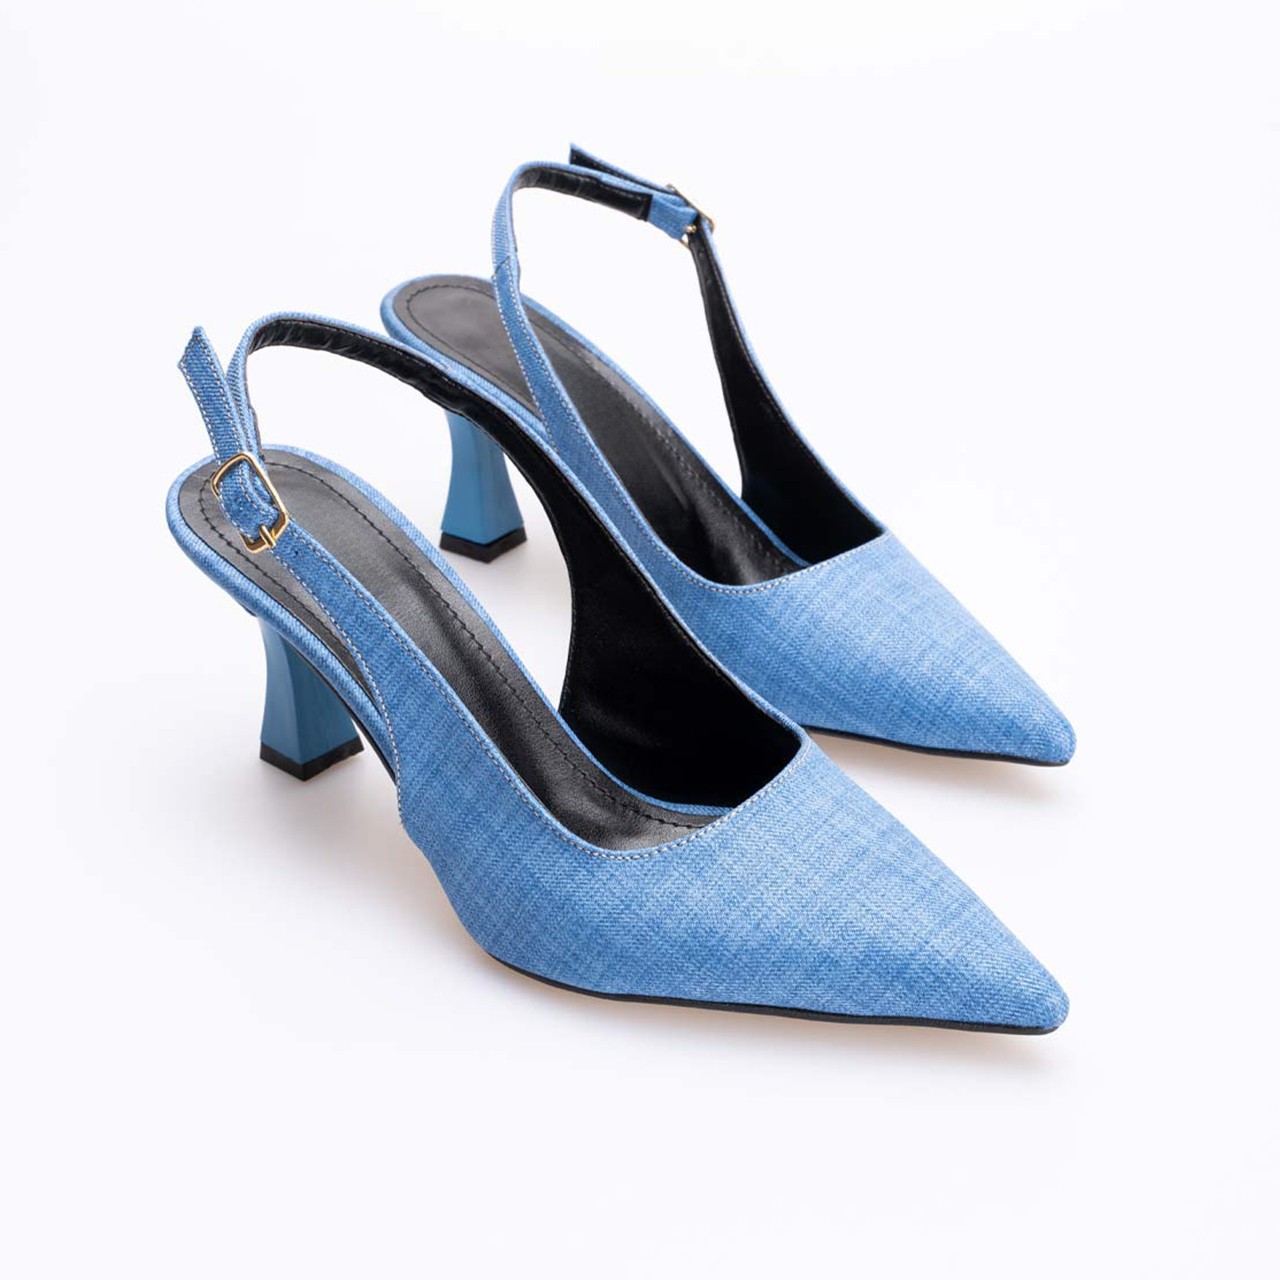 Denim İnce Yüksek Topuklu Stiletto - Mavi